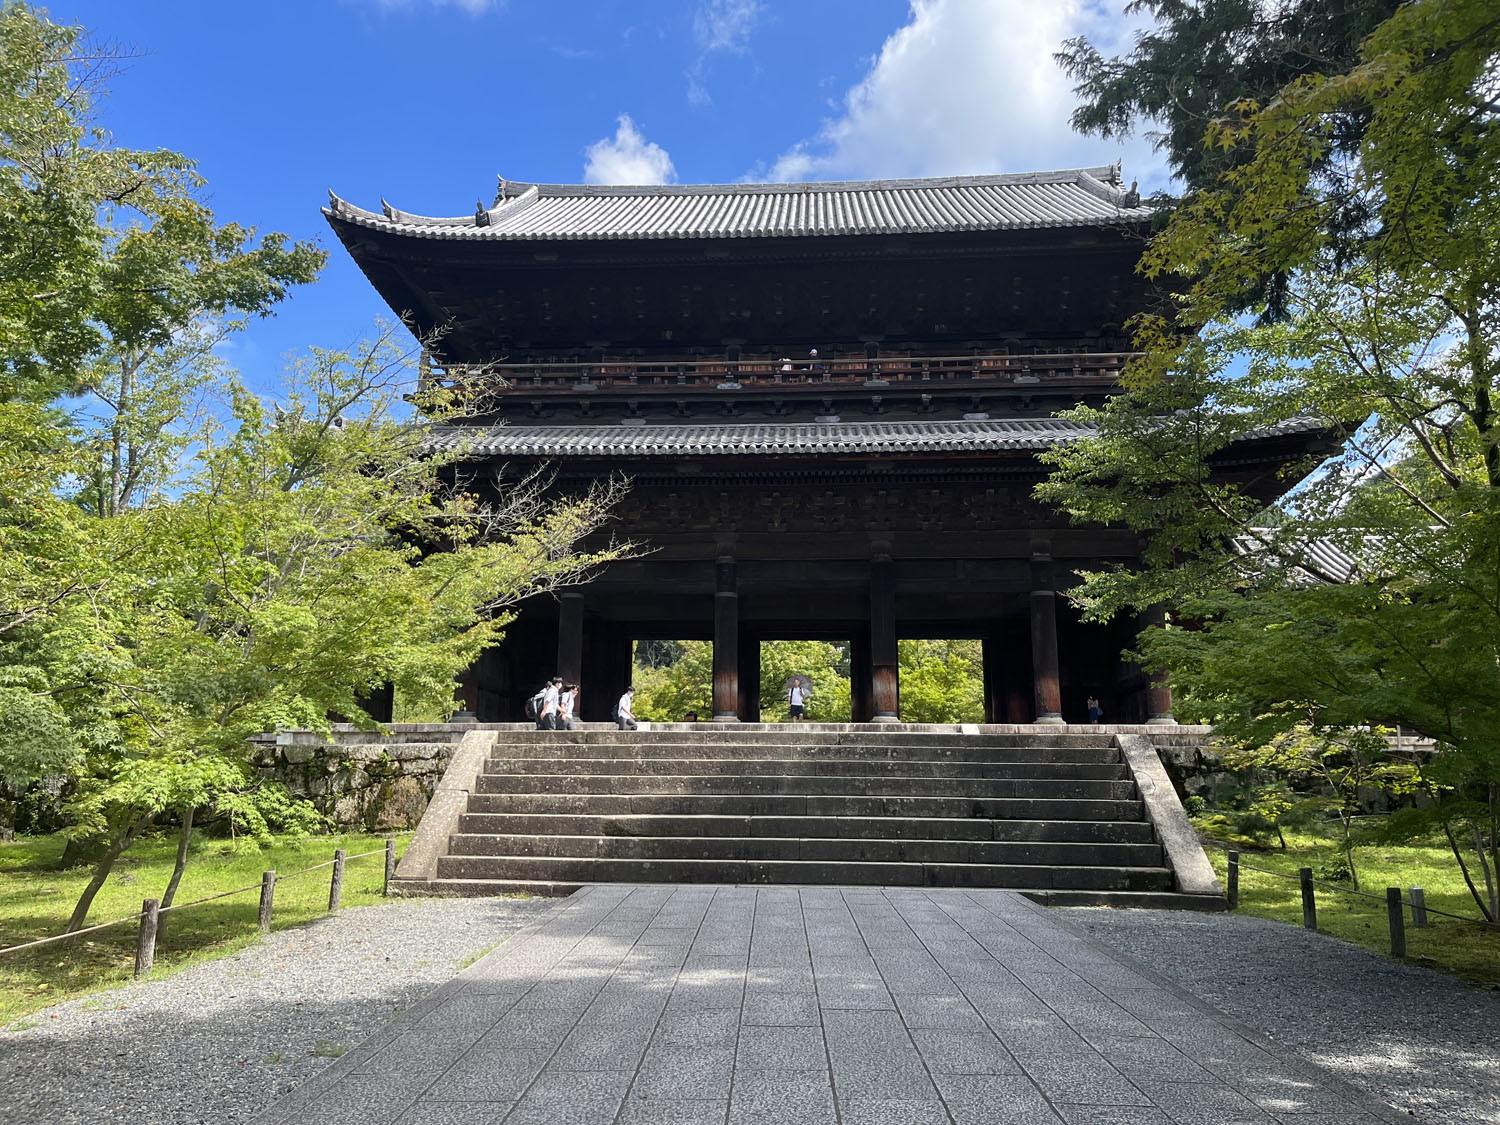 歌舞伎の石川五右衛門のセリフ「絶景かな 絶景かな」はこの三門からの眺め。